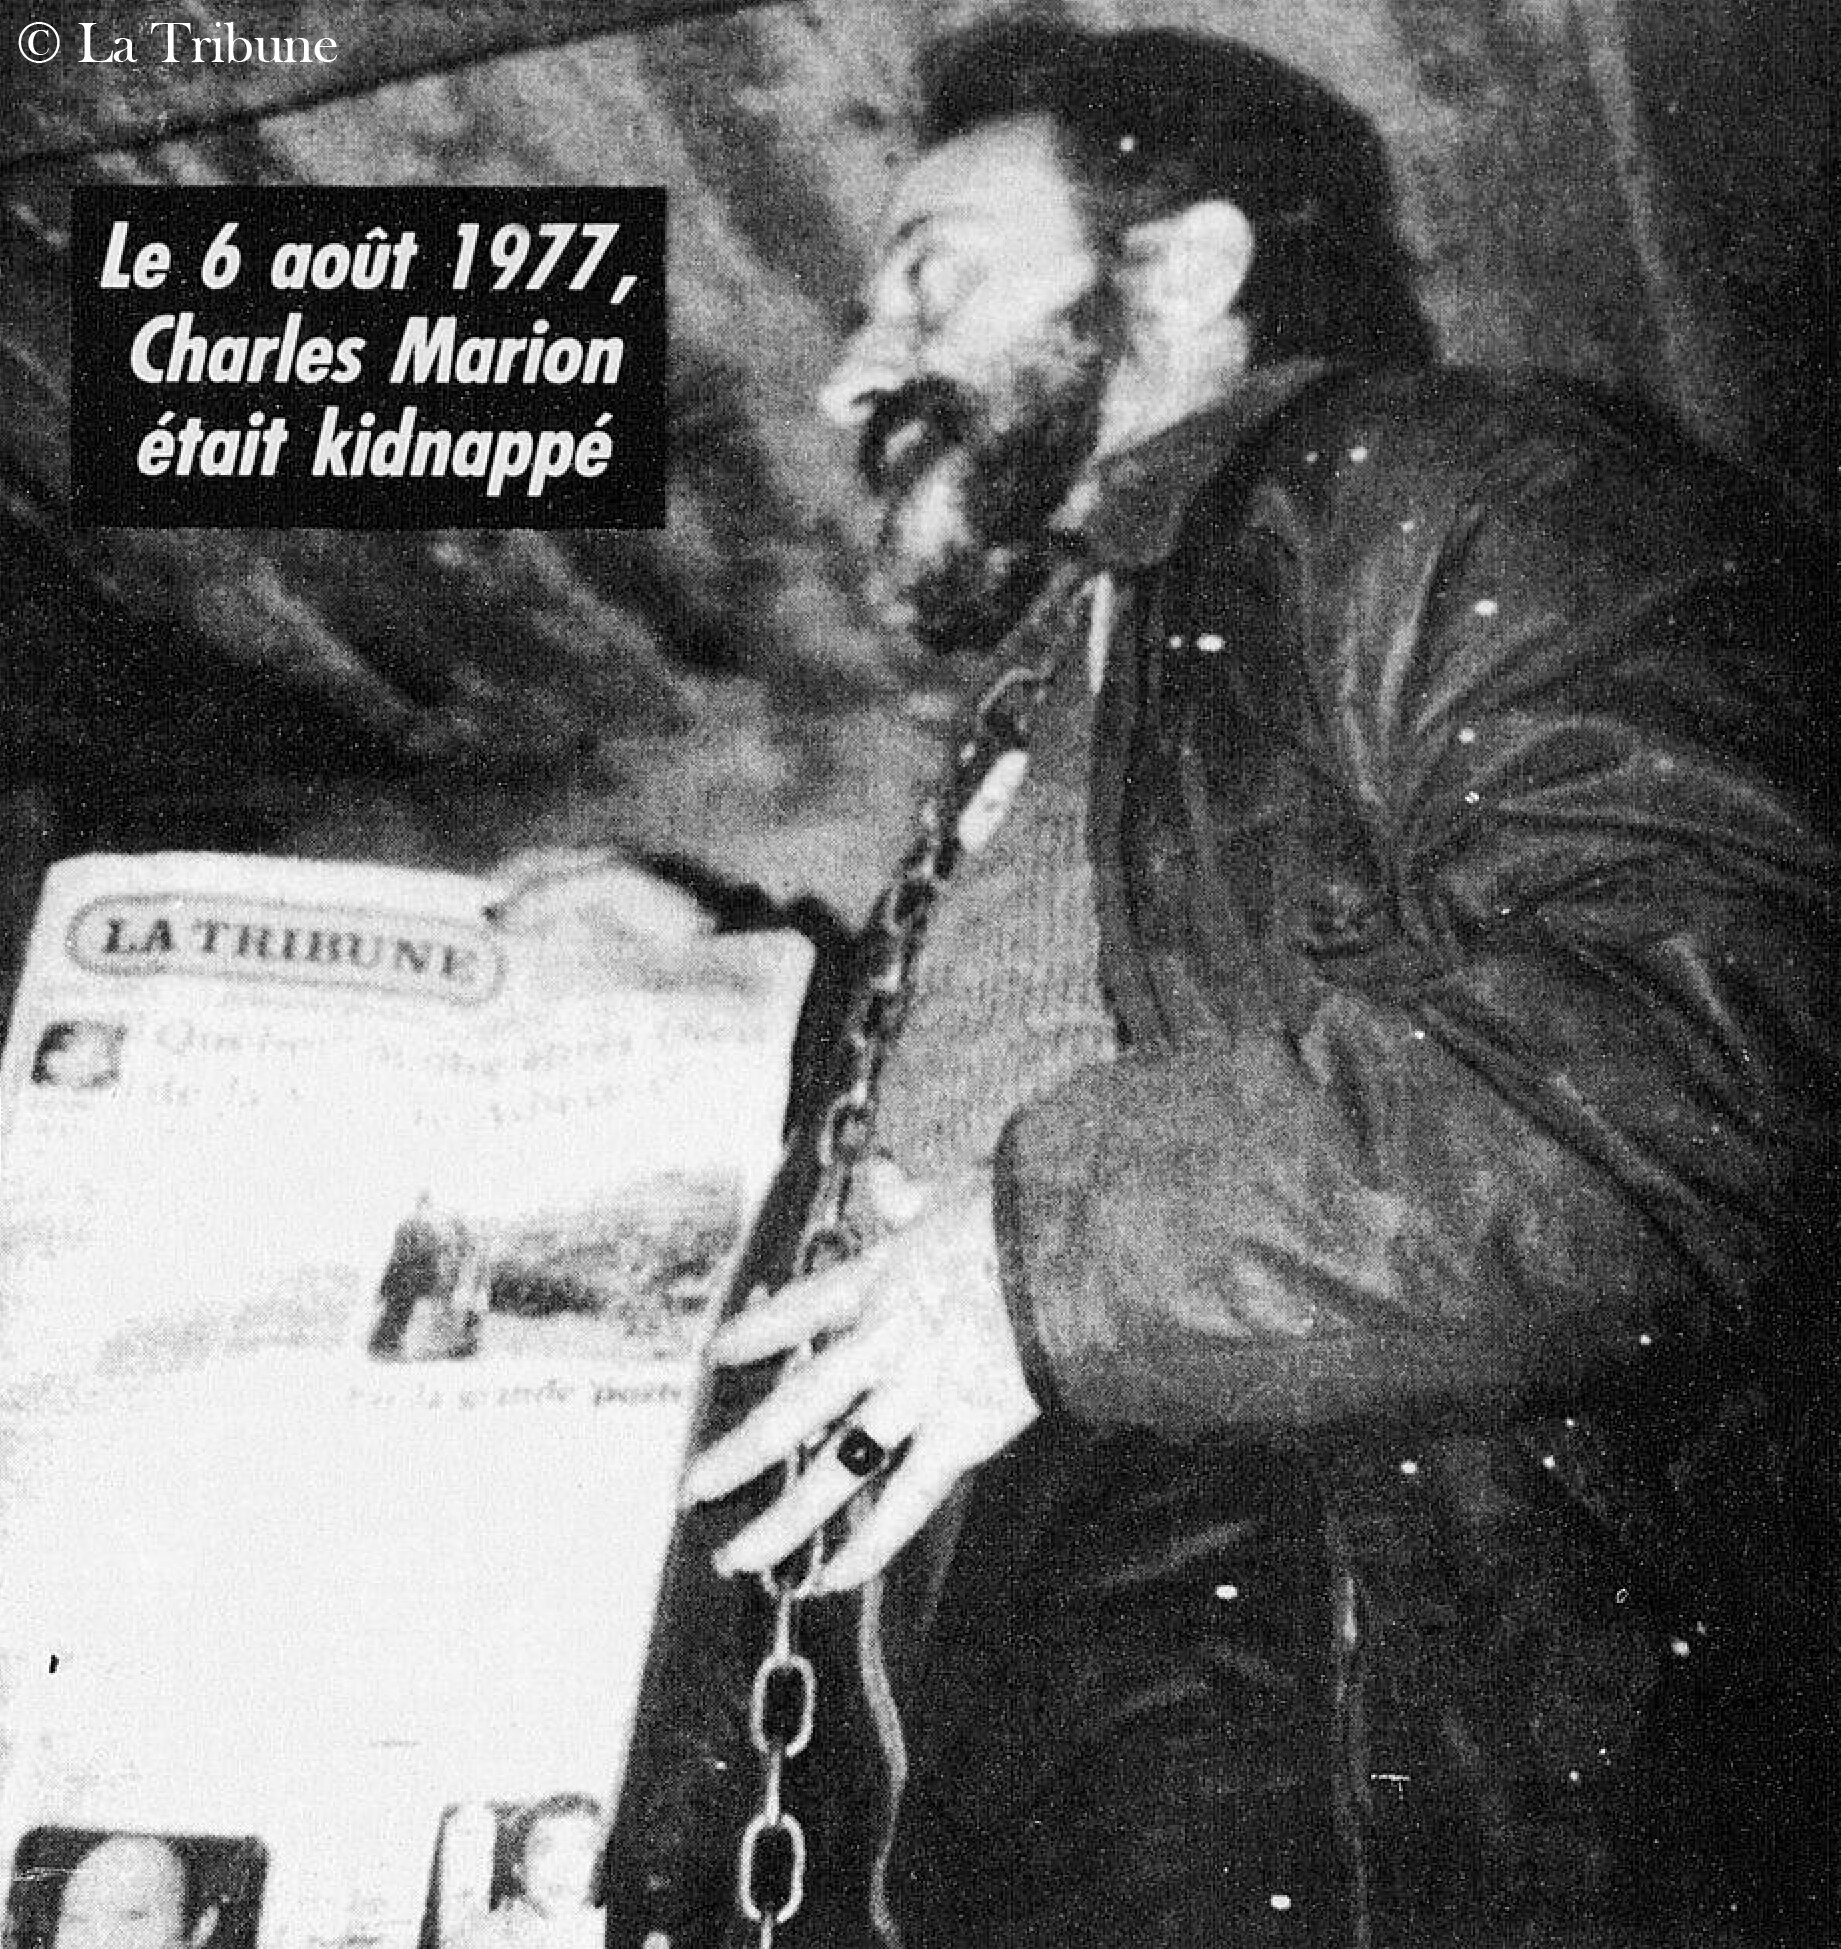  Dernière photo de Charles Marion envoyée en date du 22 octobre 1977 de la part de ses ravisseurs. On remarque la barbe et la longueur des ongles de M. Marion. Sources: Journal La Tribune, 6 août 1992 (BanQ) 